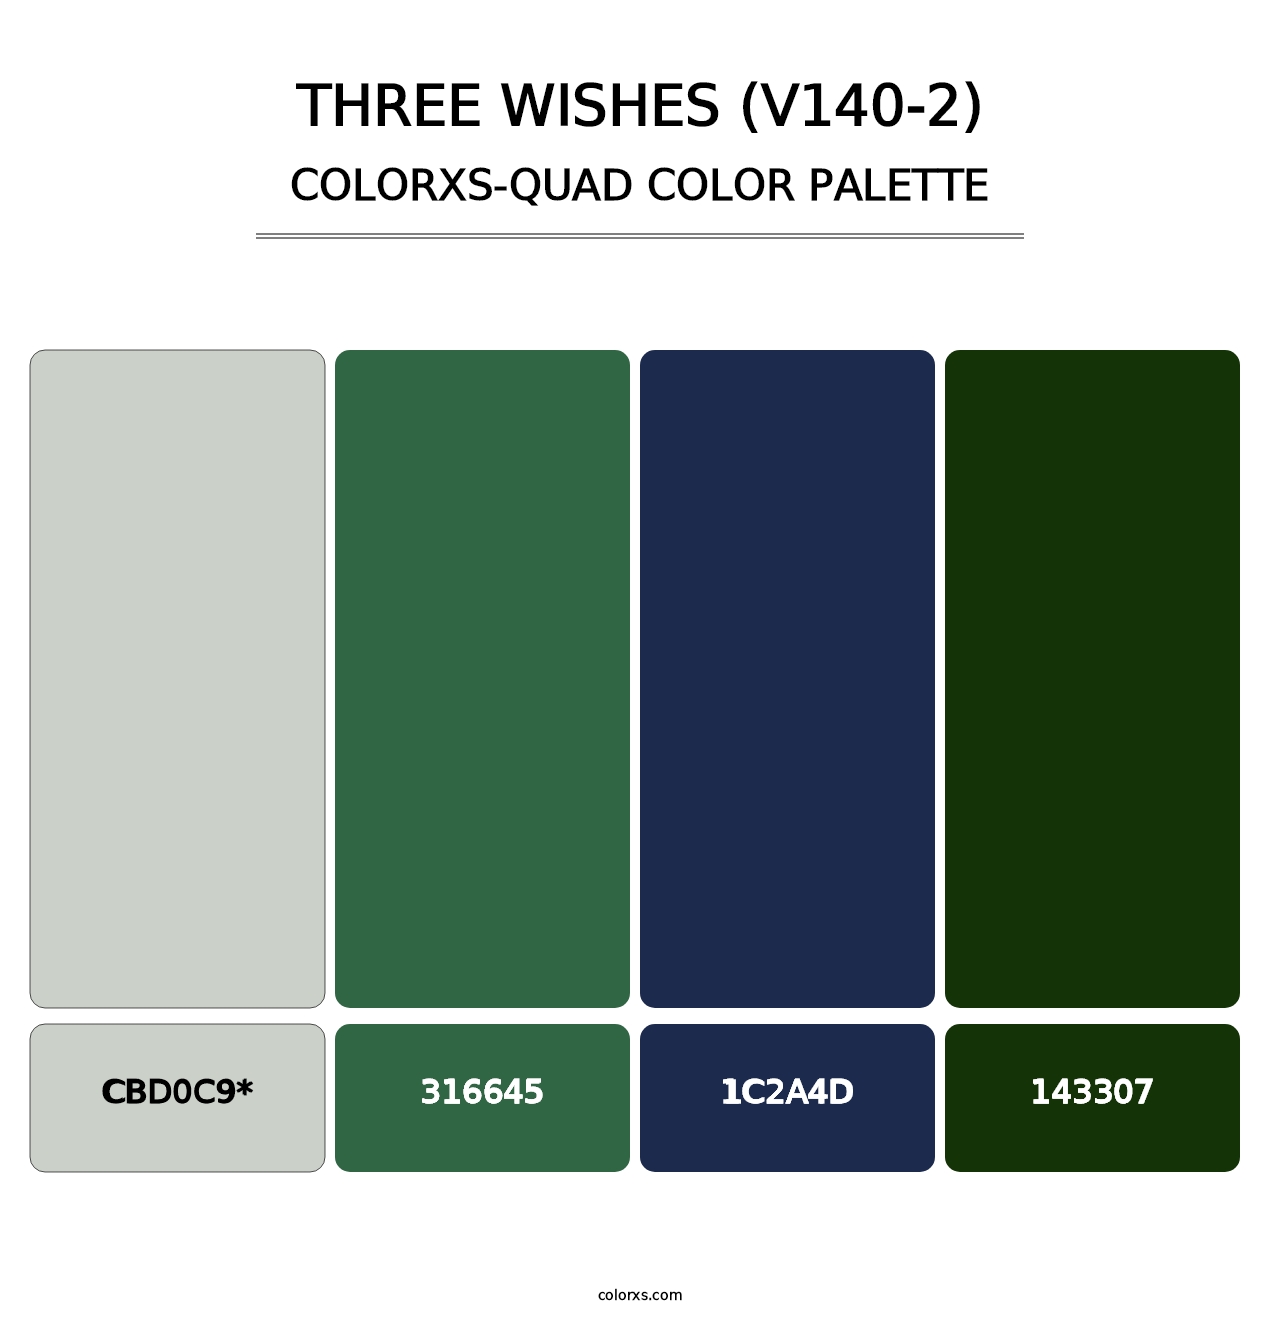 Three Wishes (V140-2) - Colorxs Quad Palette